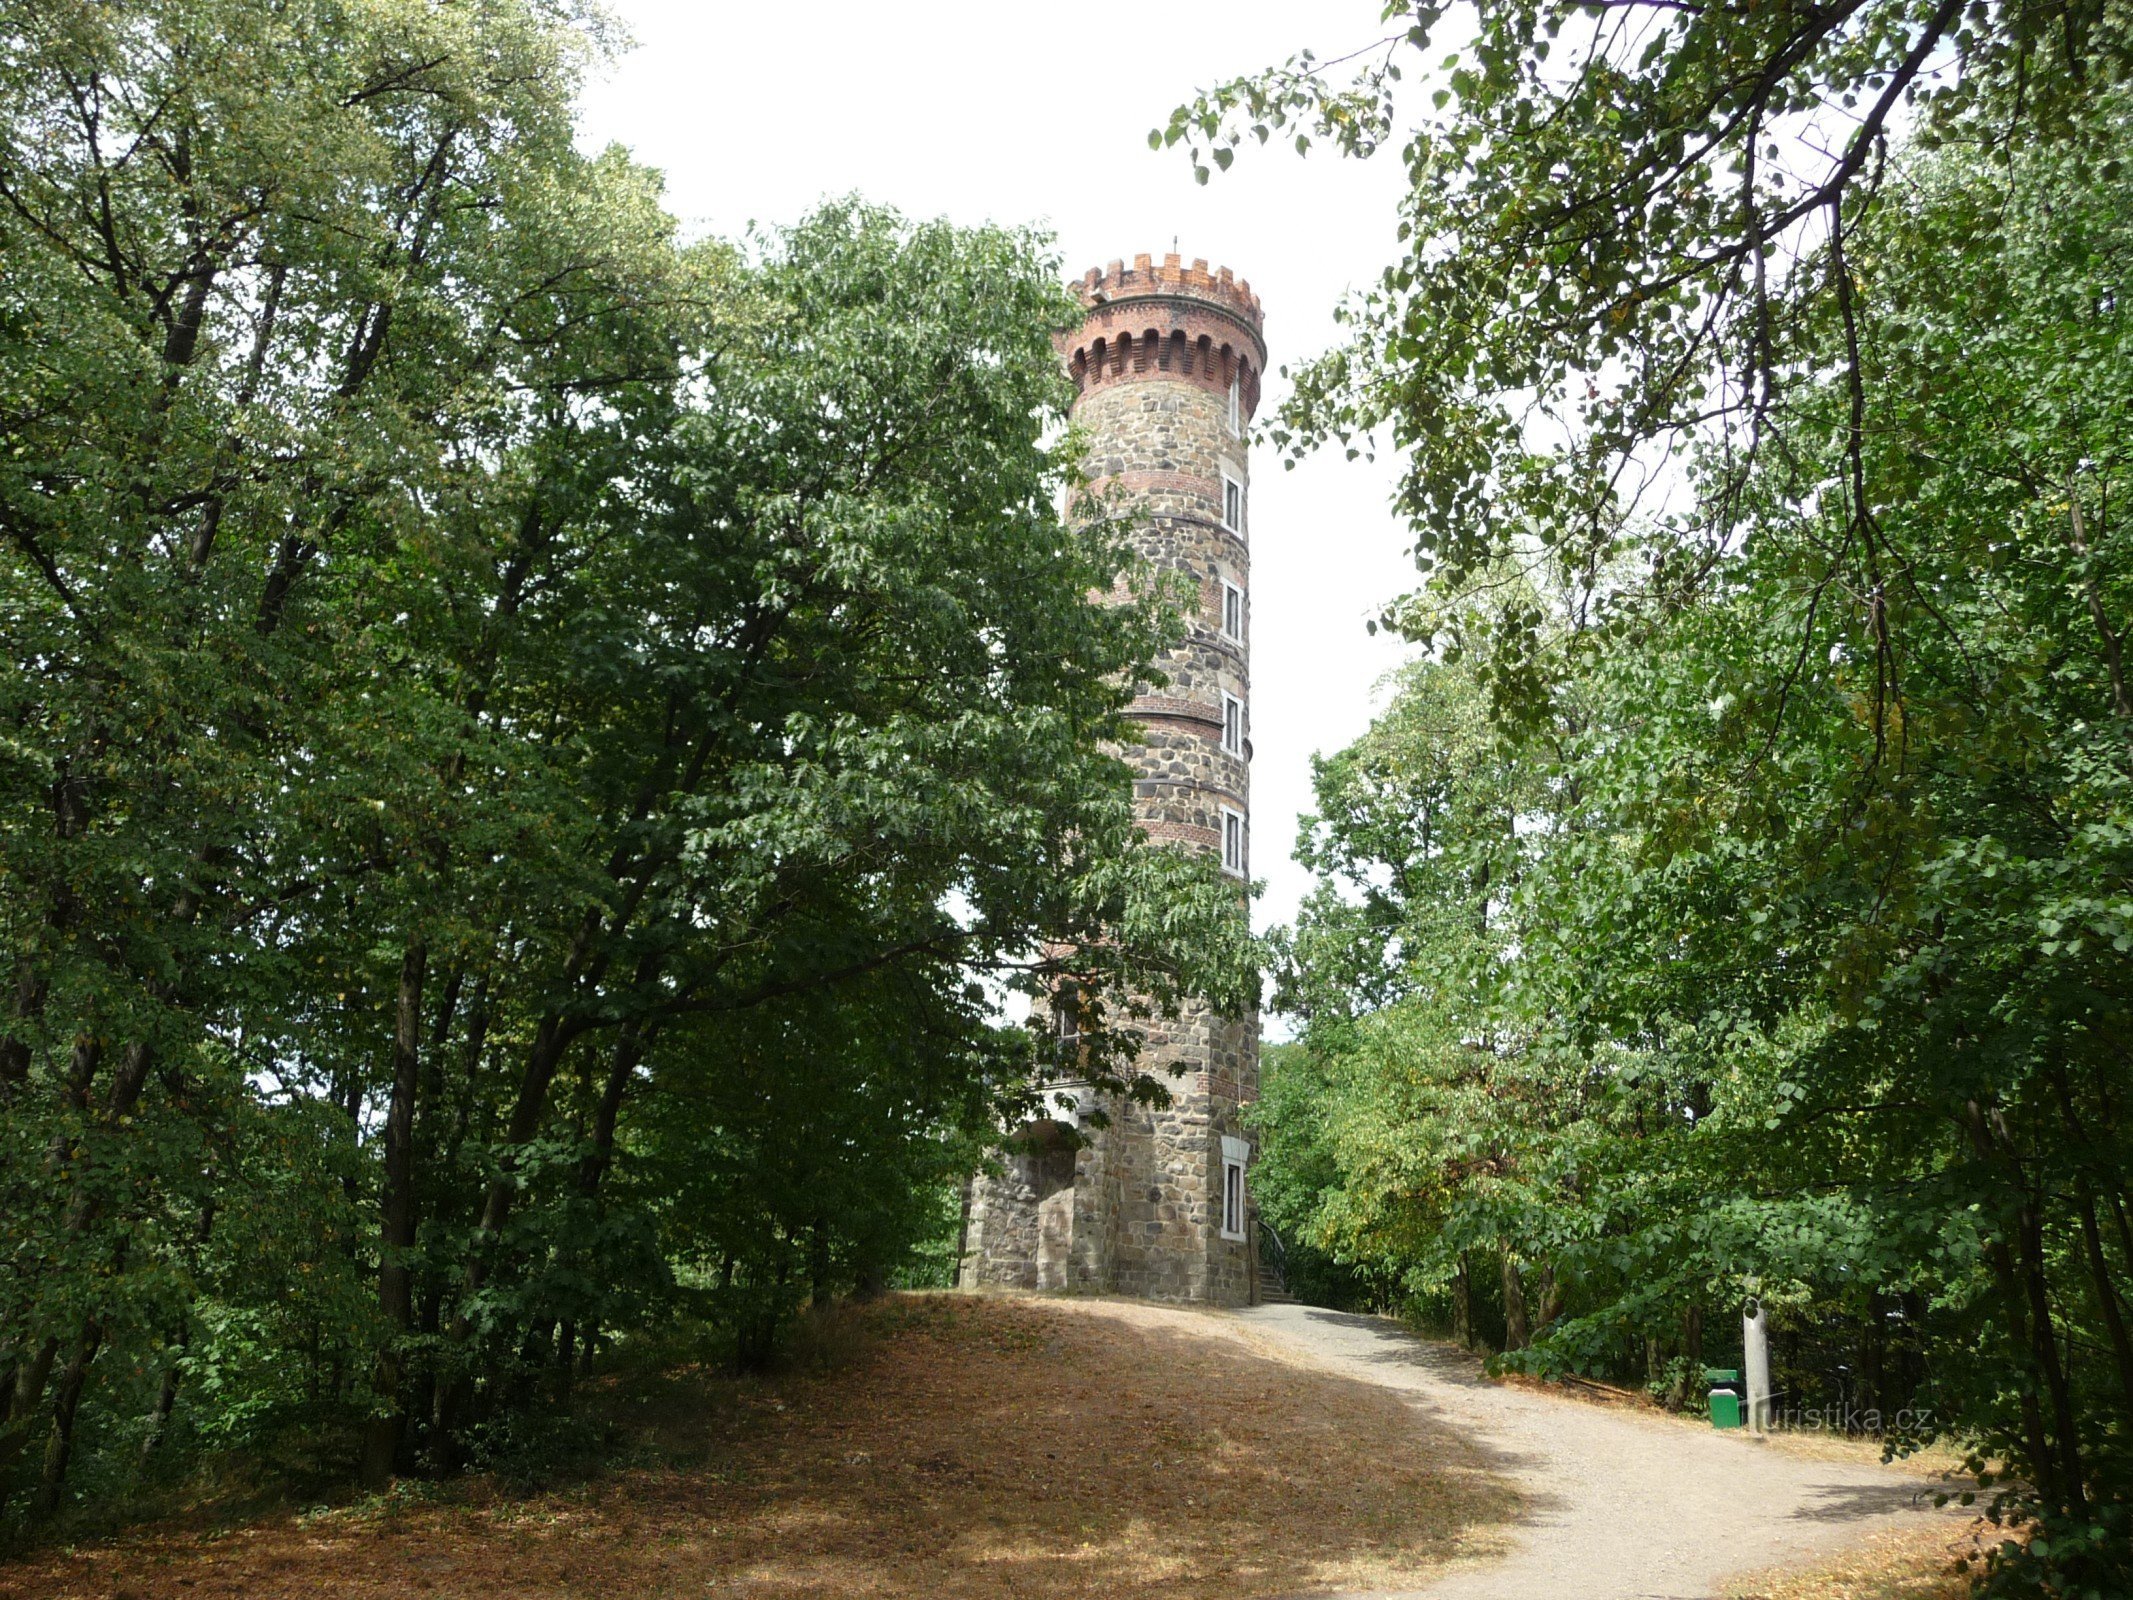 Cvilín - tháp quan sát chi tiết từ bên ngoài, bên trong và quang cảnh